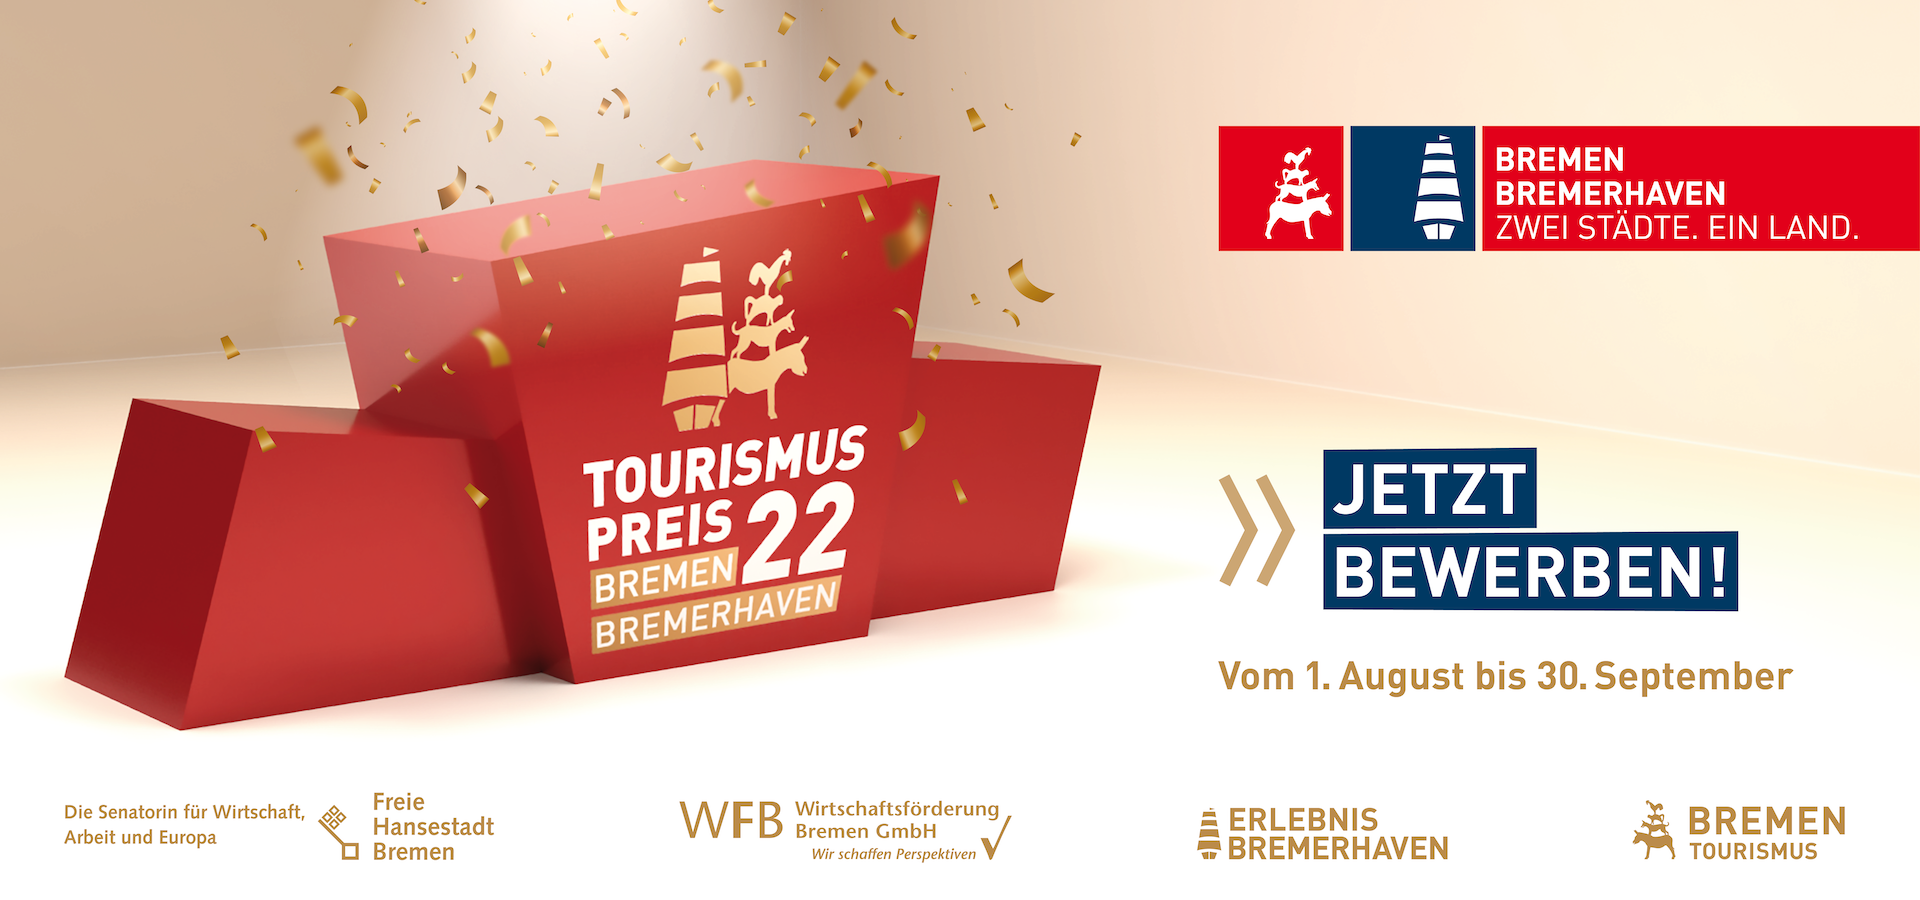 Tourismuspreis 2022 im Land Bremen; vom 1. August bis 30. September; Jetzt bewerben!